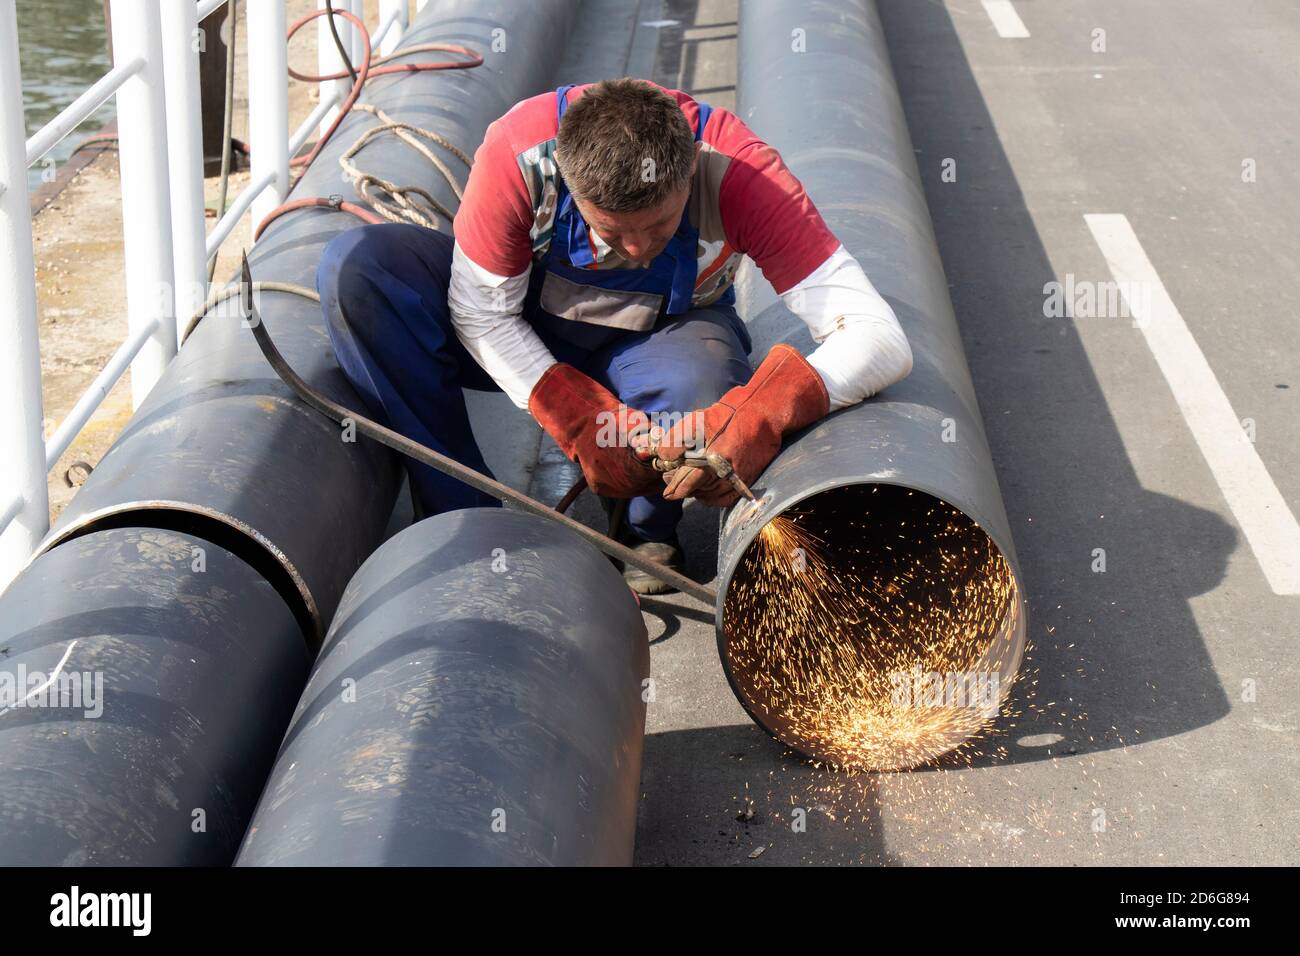 Belgrado, Serbia - 09 ottobre 2020: Saldatore che taglia un ampio tubo metallico con una torcia da taglio ad ossi-combustibile, con fiamma e scintille, all'aperto sulla riva del fiume Foto Stock